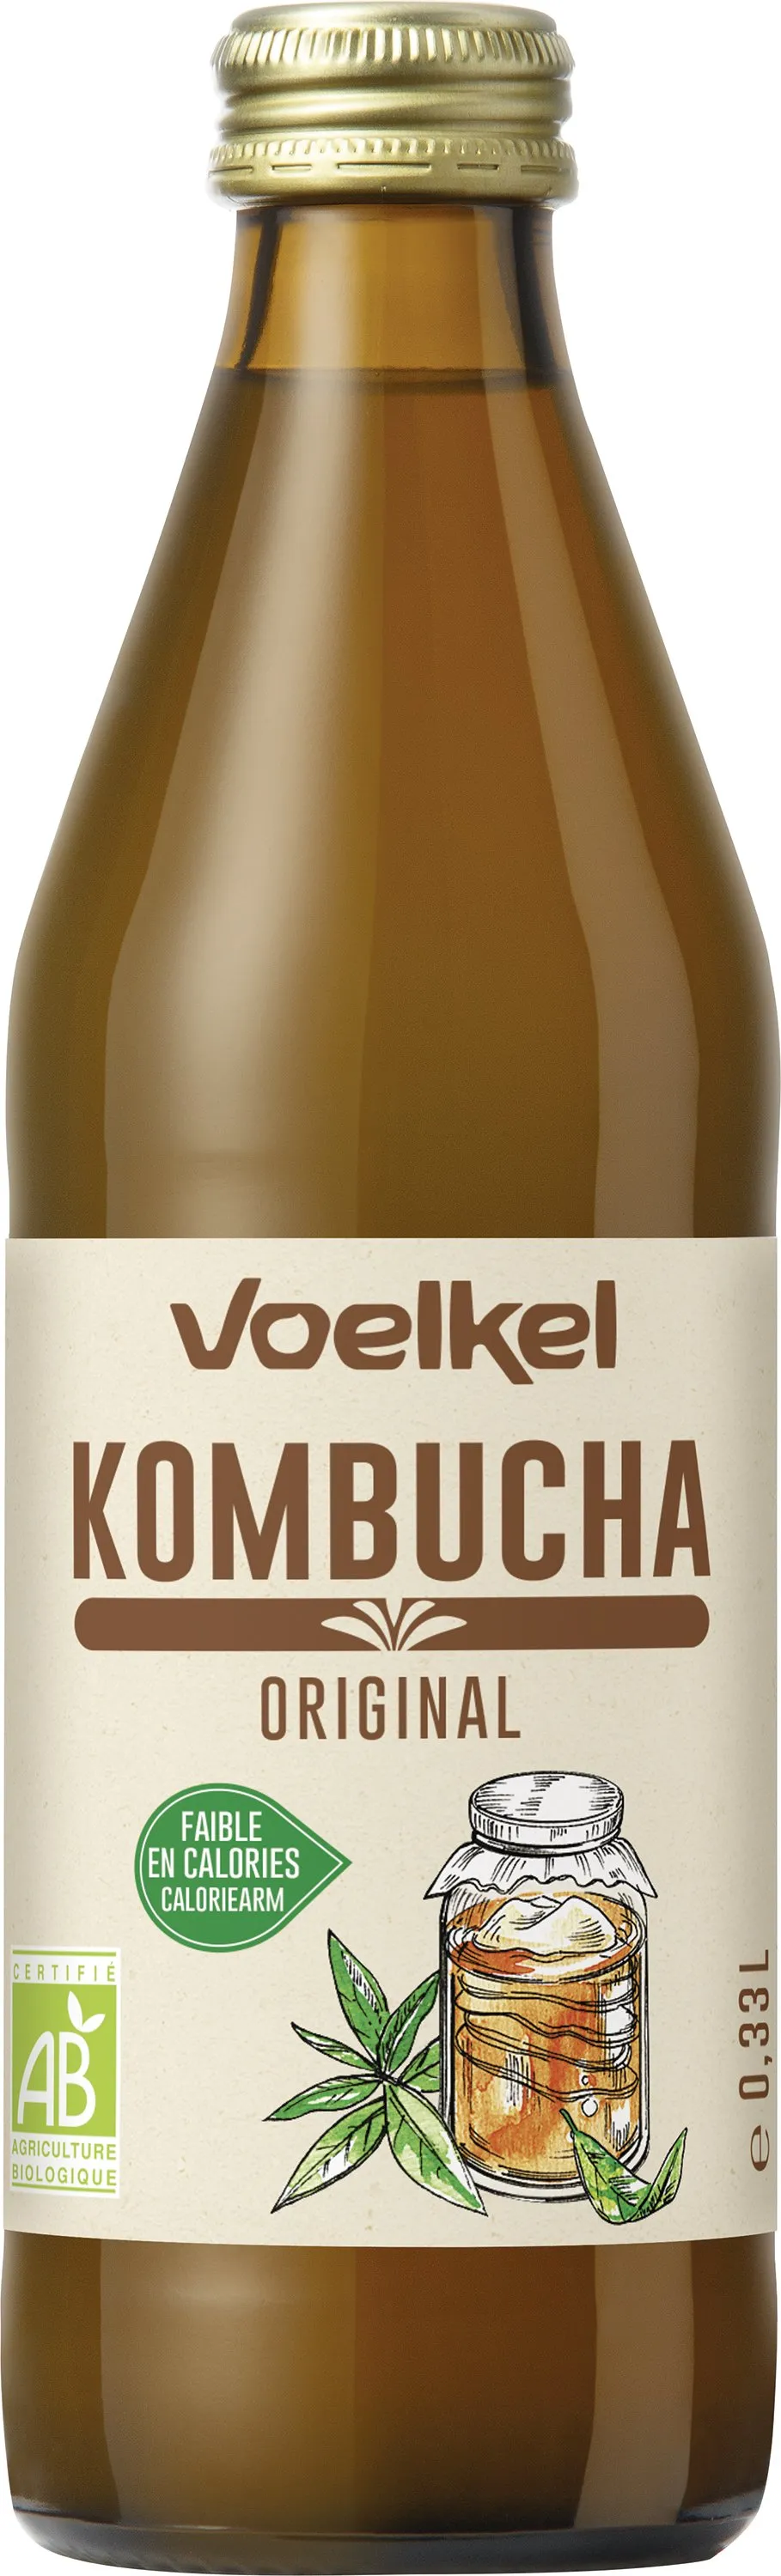 Voelkel Kombucha original bio 750ml